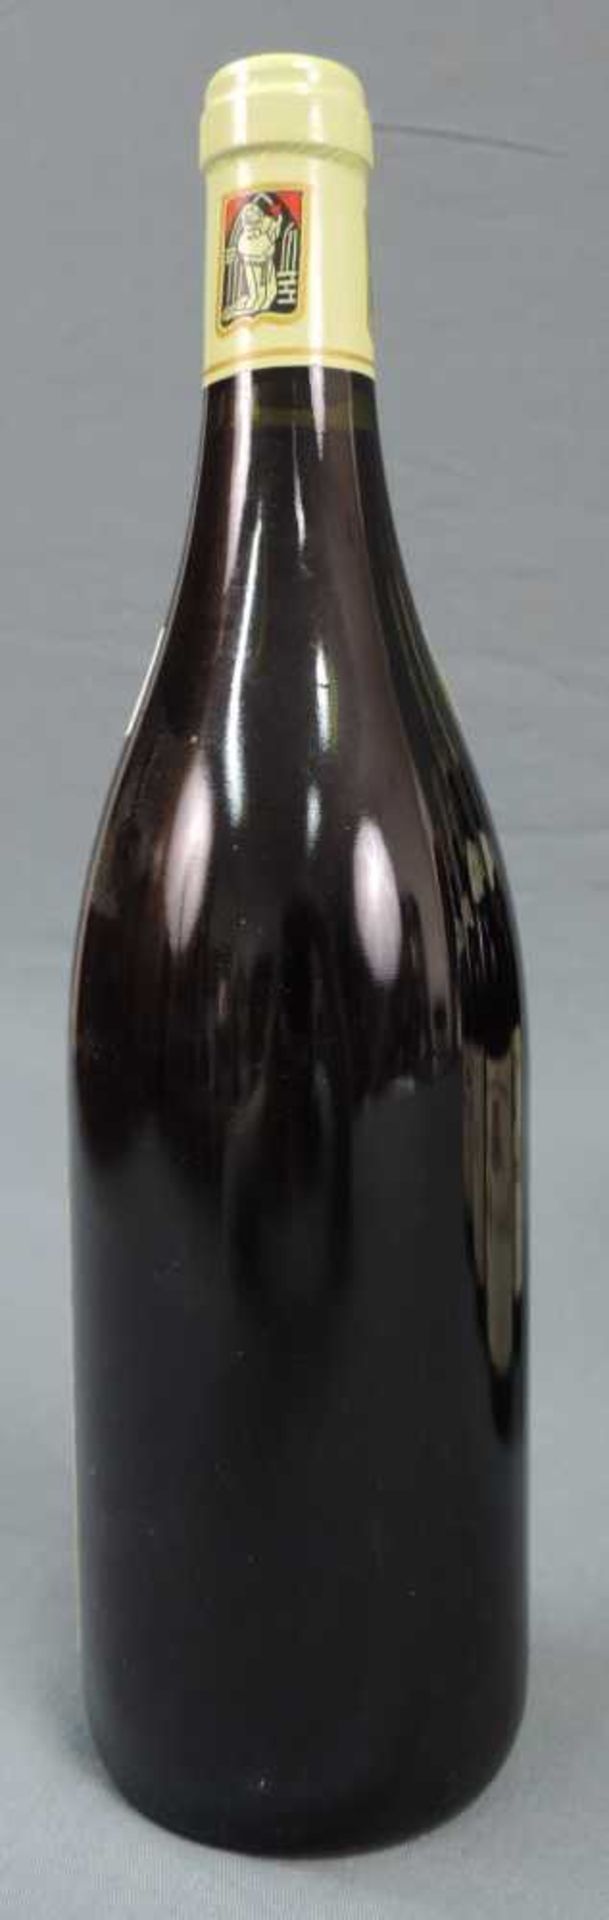 2000 Domaine Prieur - Brunet, Satenay Comme Premier Cru, France. 8 Flaschen, 750 ml, Alc., 13,5% - Image 6 of 6